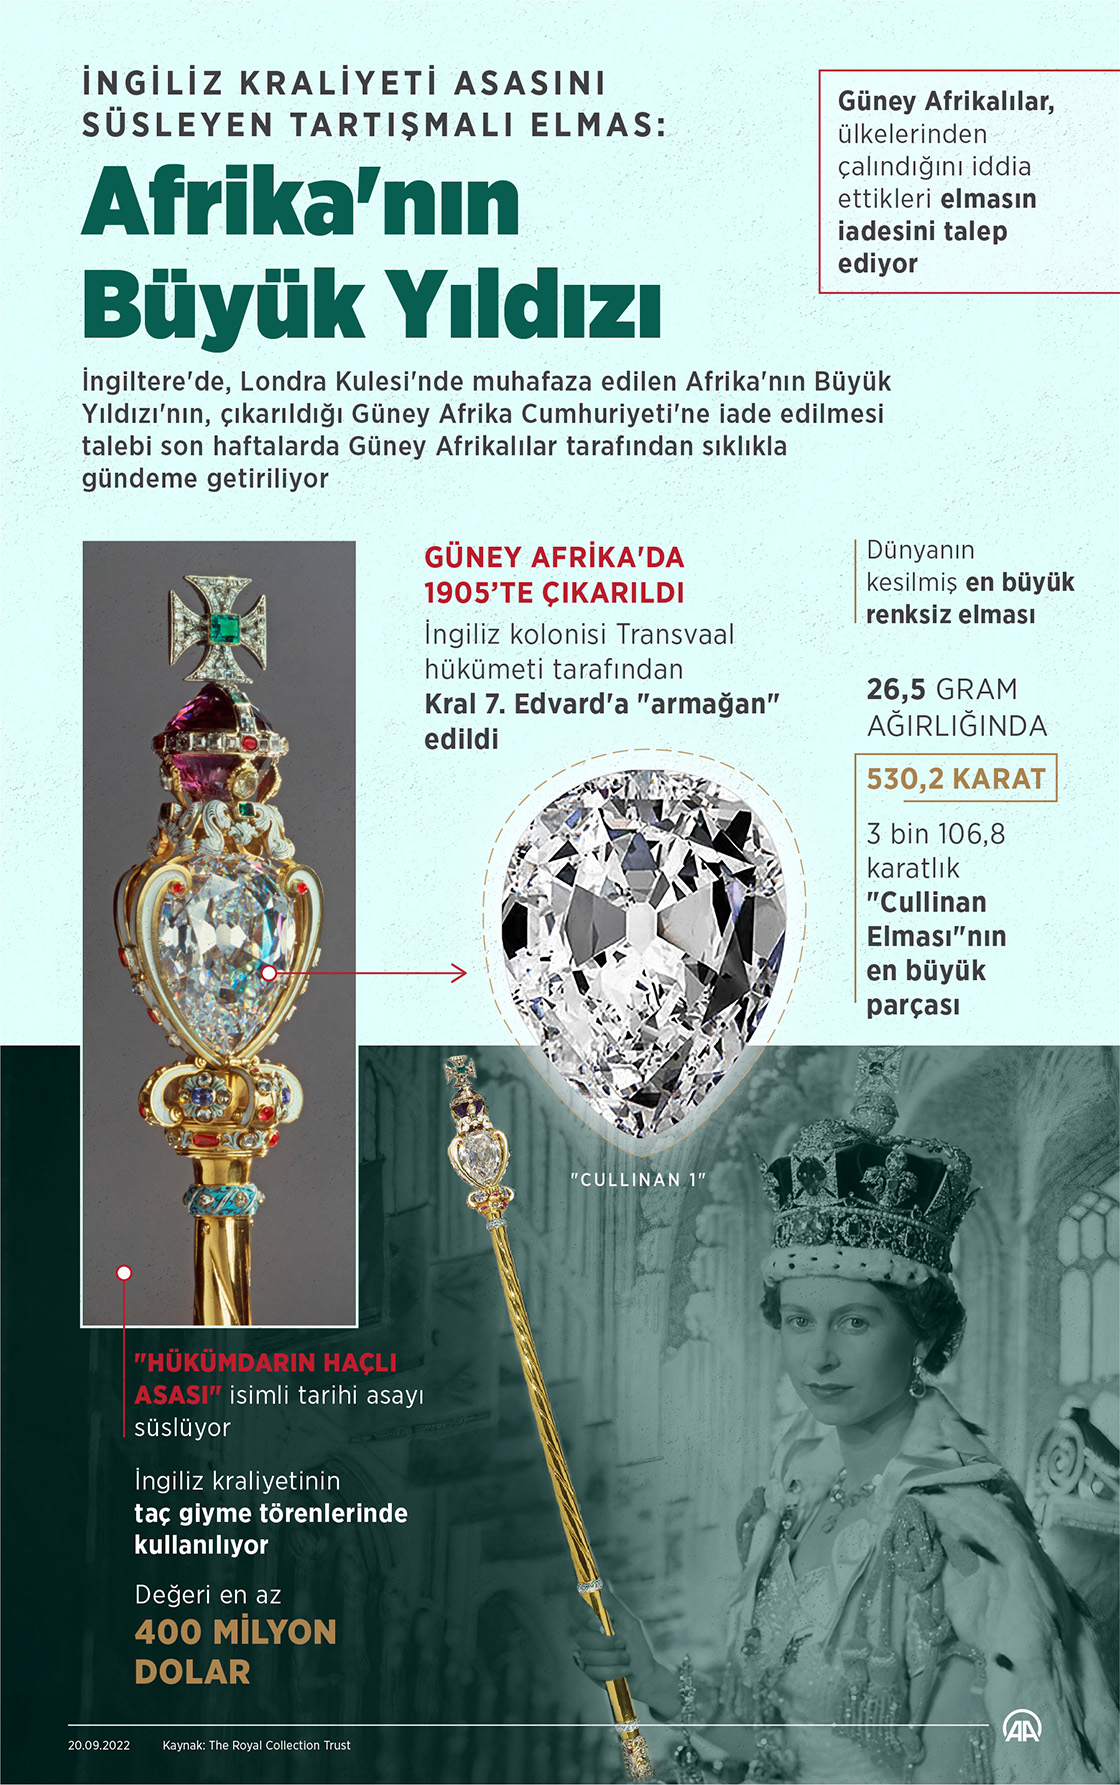 İngiliz Kraliyeti asasını süsleyen tartışmalı elmas: Afrika'nın Büyük Yıldızı